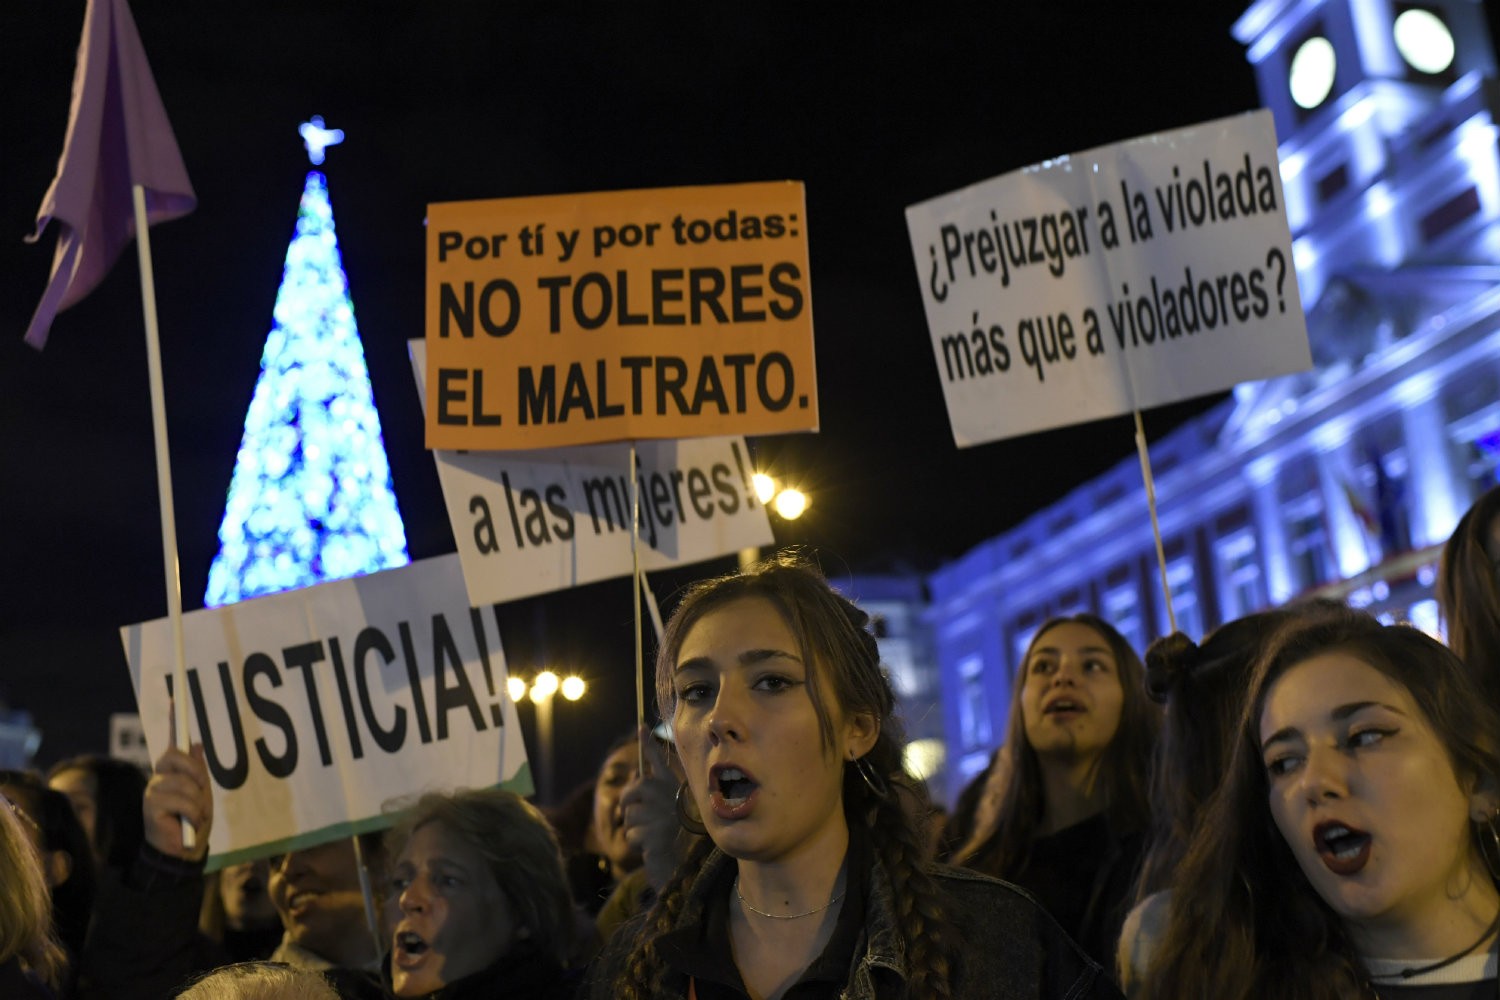 Gratë në Spanjë hyjnë në grevë të përgjithshme